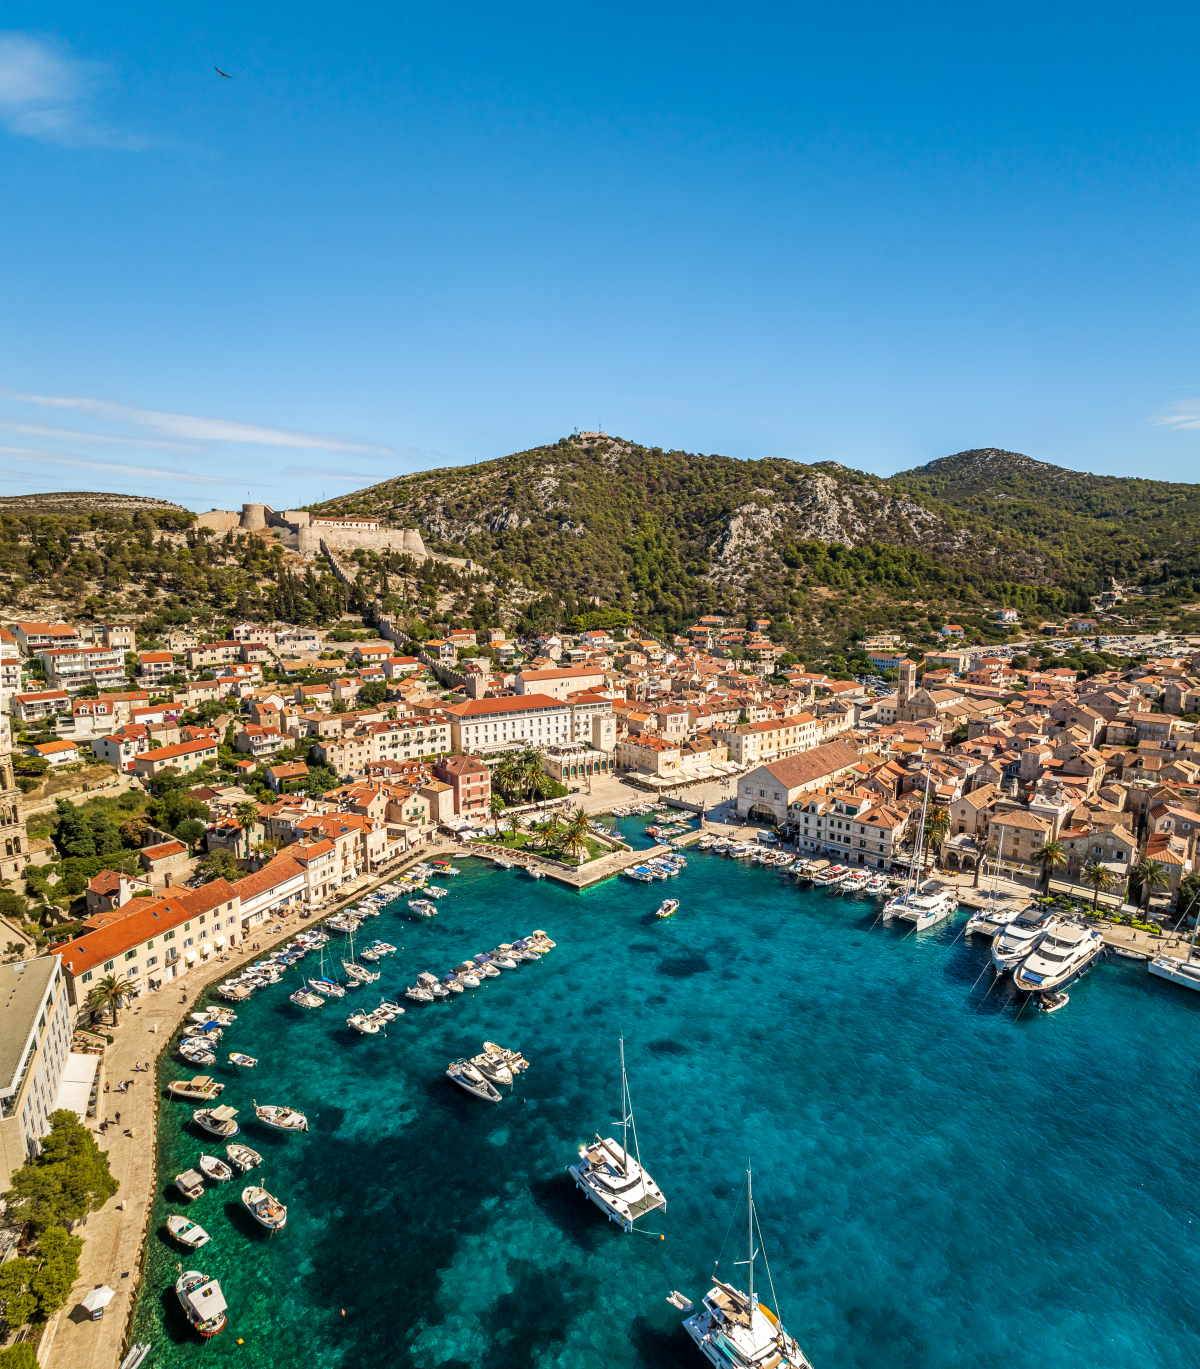 Chorwacja Wymarzony odpoczynek przez cały rok. Chorwację można poznawać na wiele sposobów: żeglować między wyspami rozsianymi po Adriatyku, odkrywać uroki średniowiecznych miasteczek, wędrować wśród szczytów i jezior Gór Dynarskich.